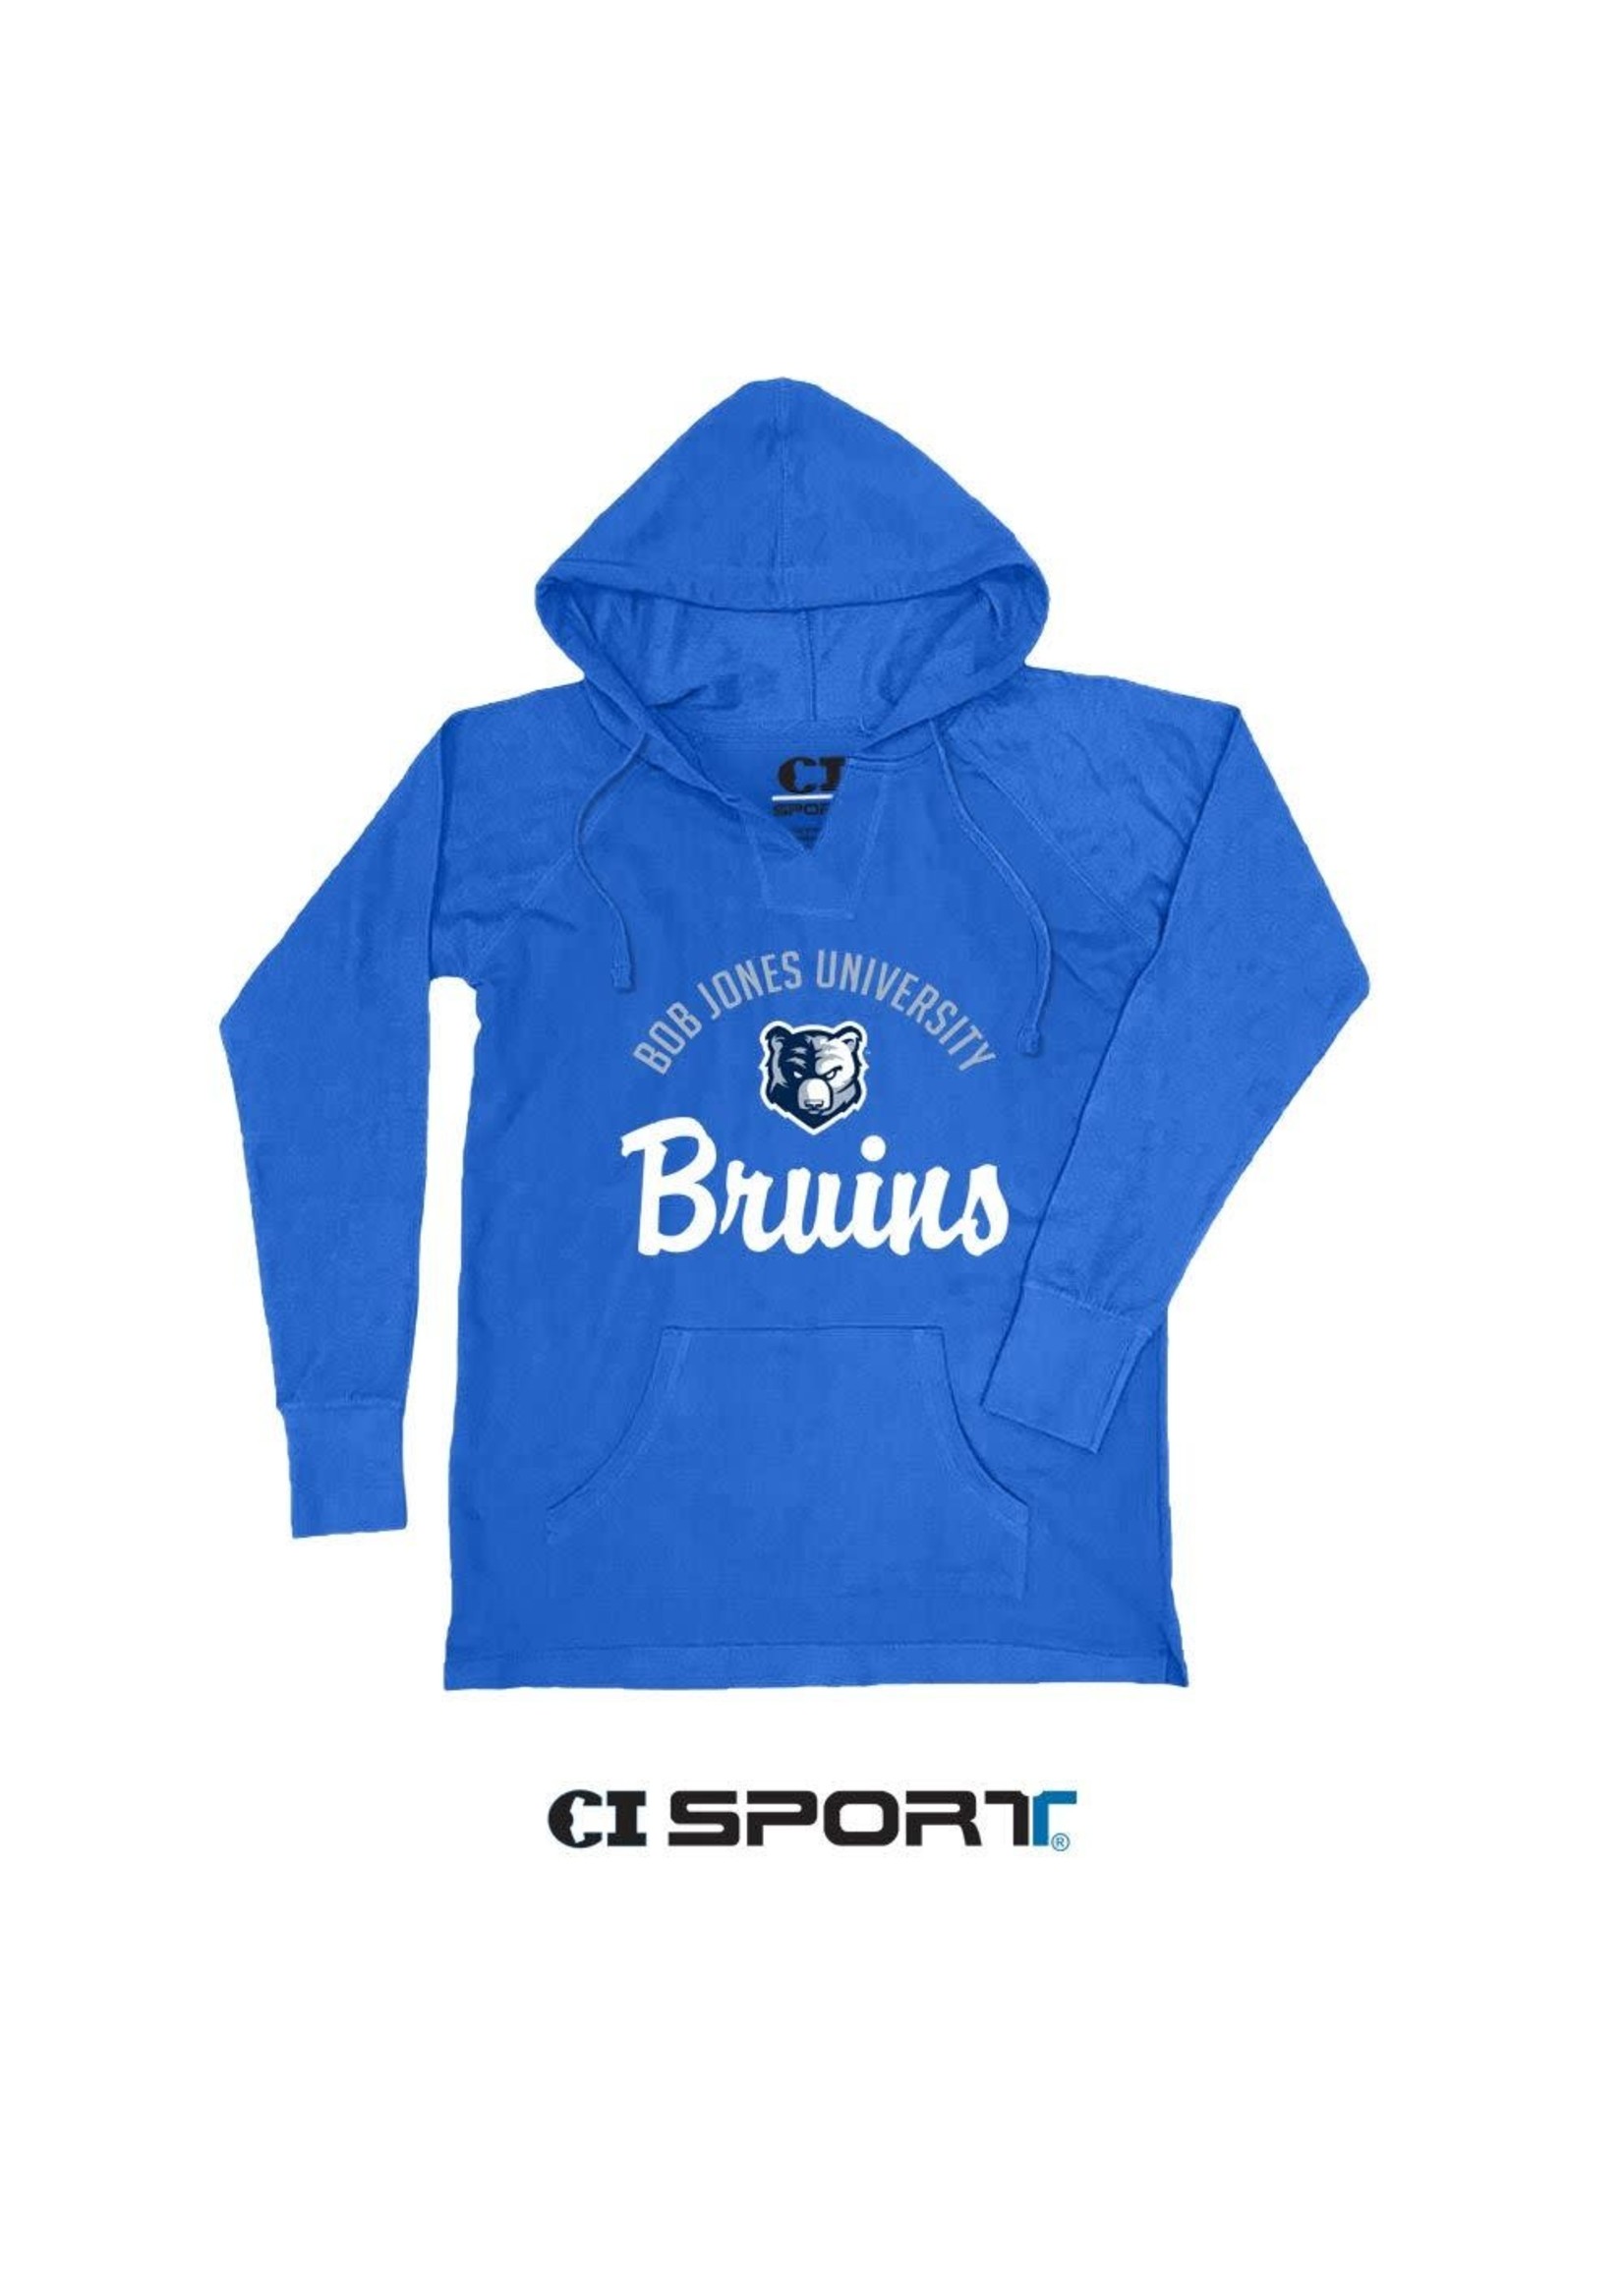 CI Sport Bruins Ladies Weekender Hood Sweatshirt